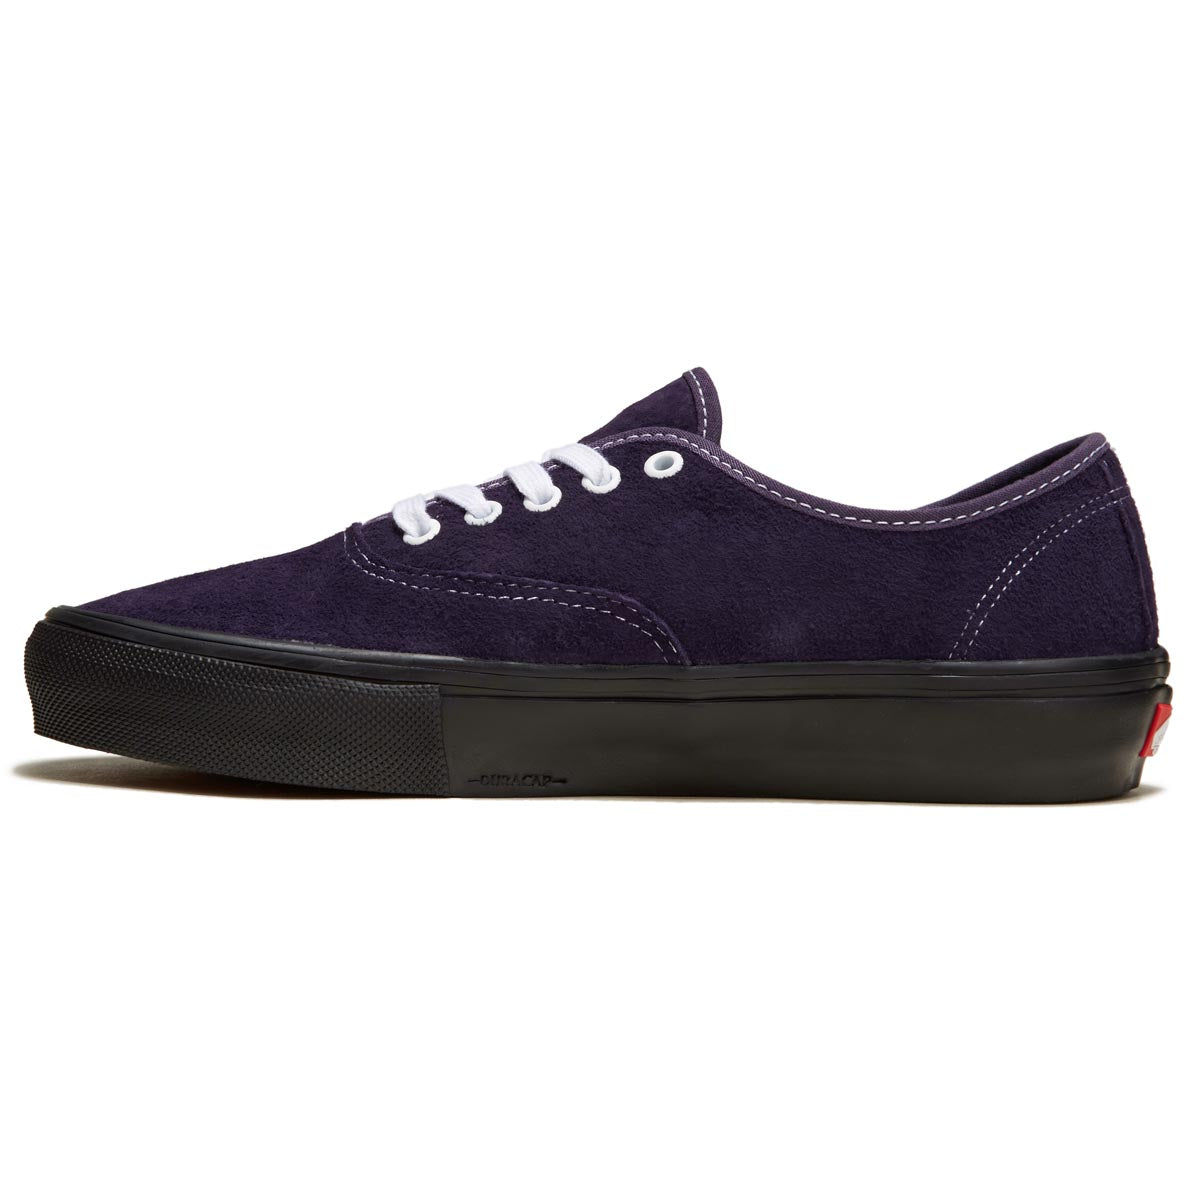 Vans Skate Authentic Shoes - Pig Suede Dark Purple/Black – CCS